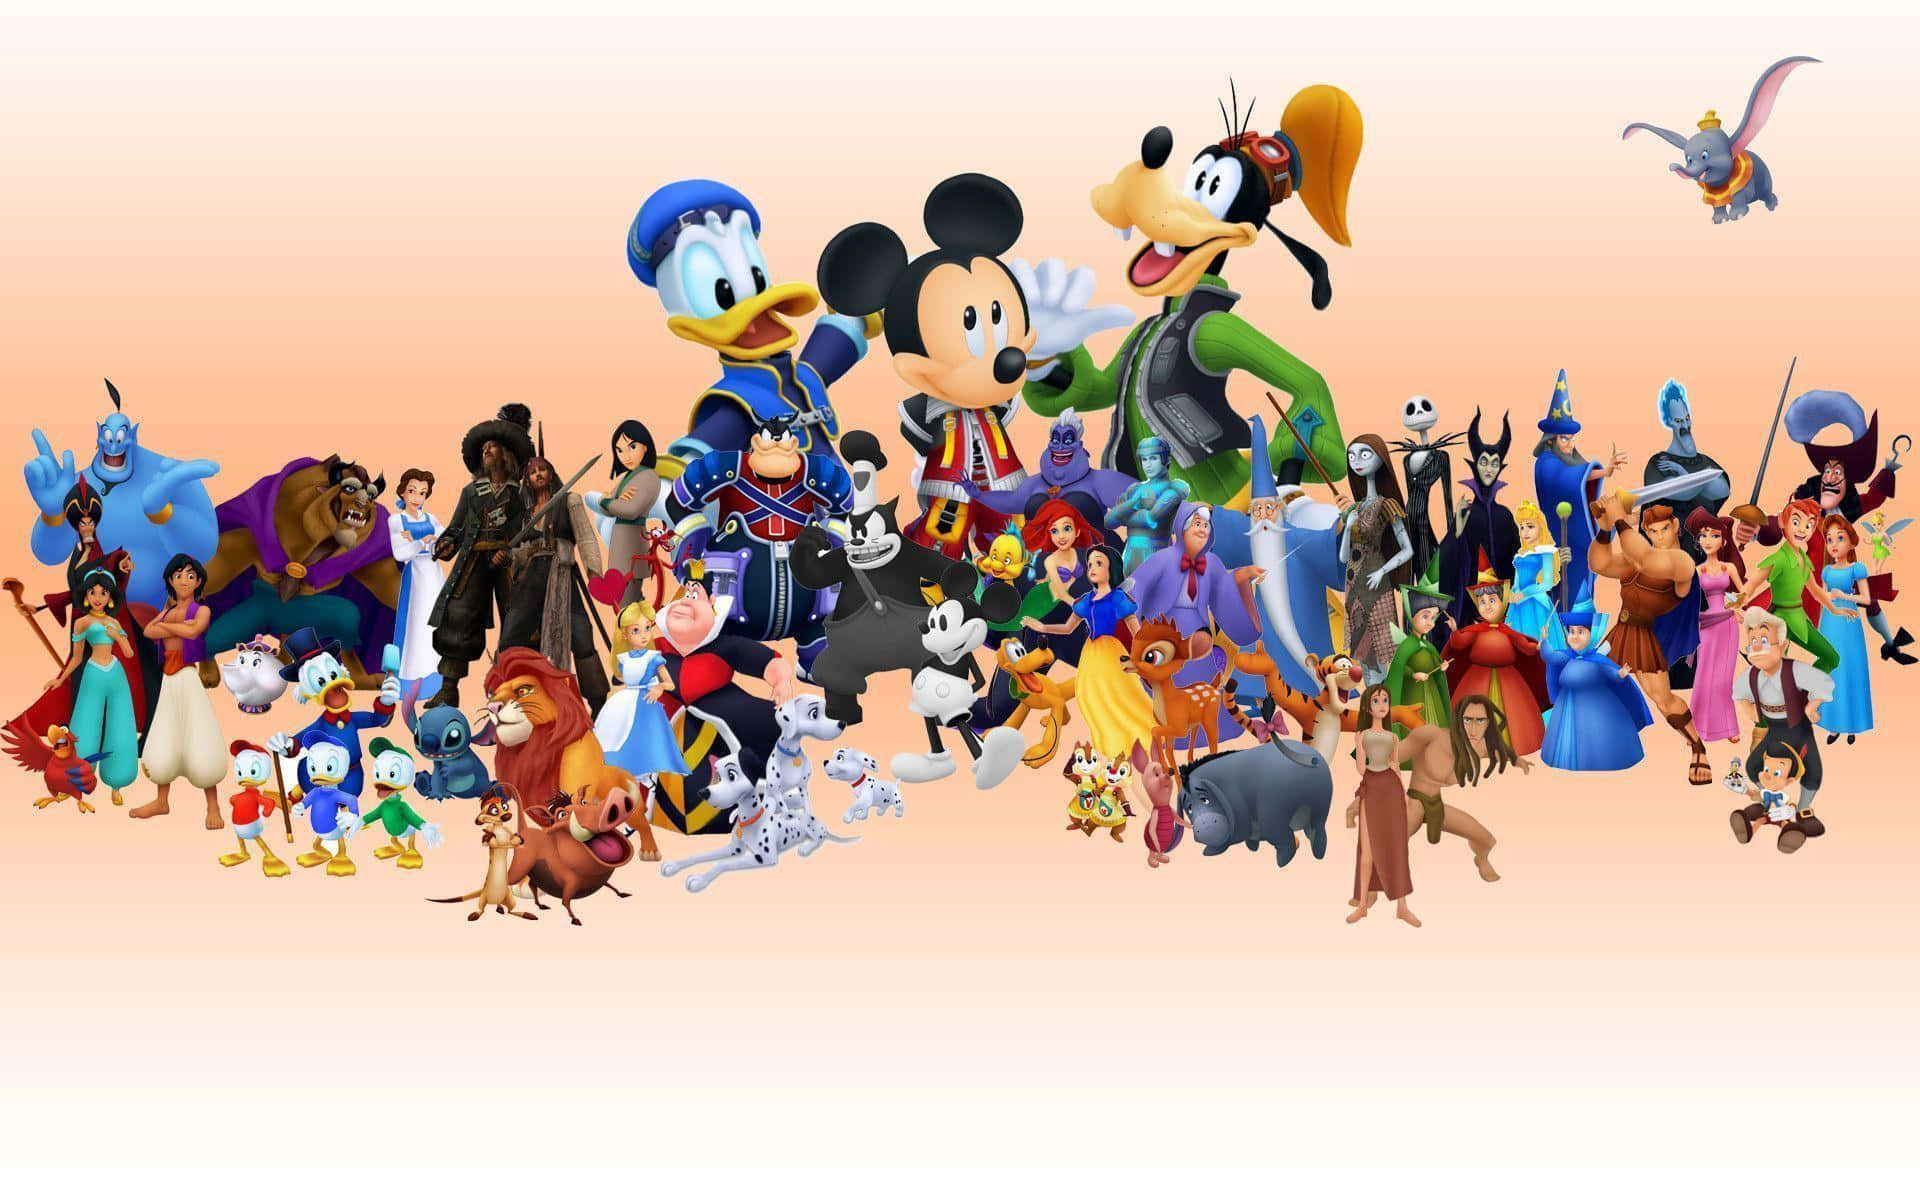 Melhorpapel De Parede Da Disney Com Donald, Mickey E Pateta Junto Com Outros Personagens.